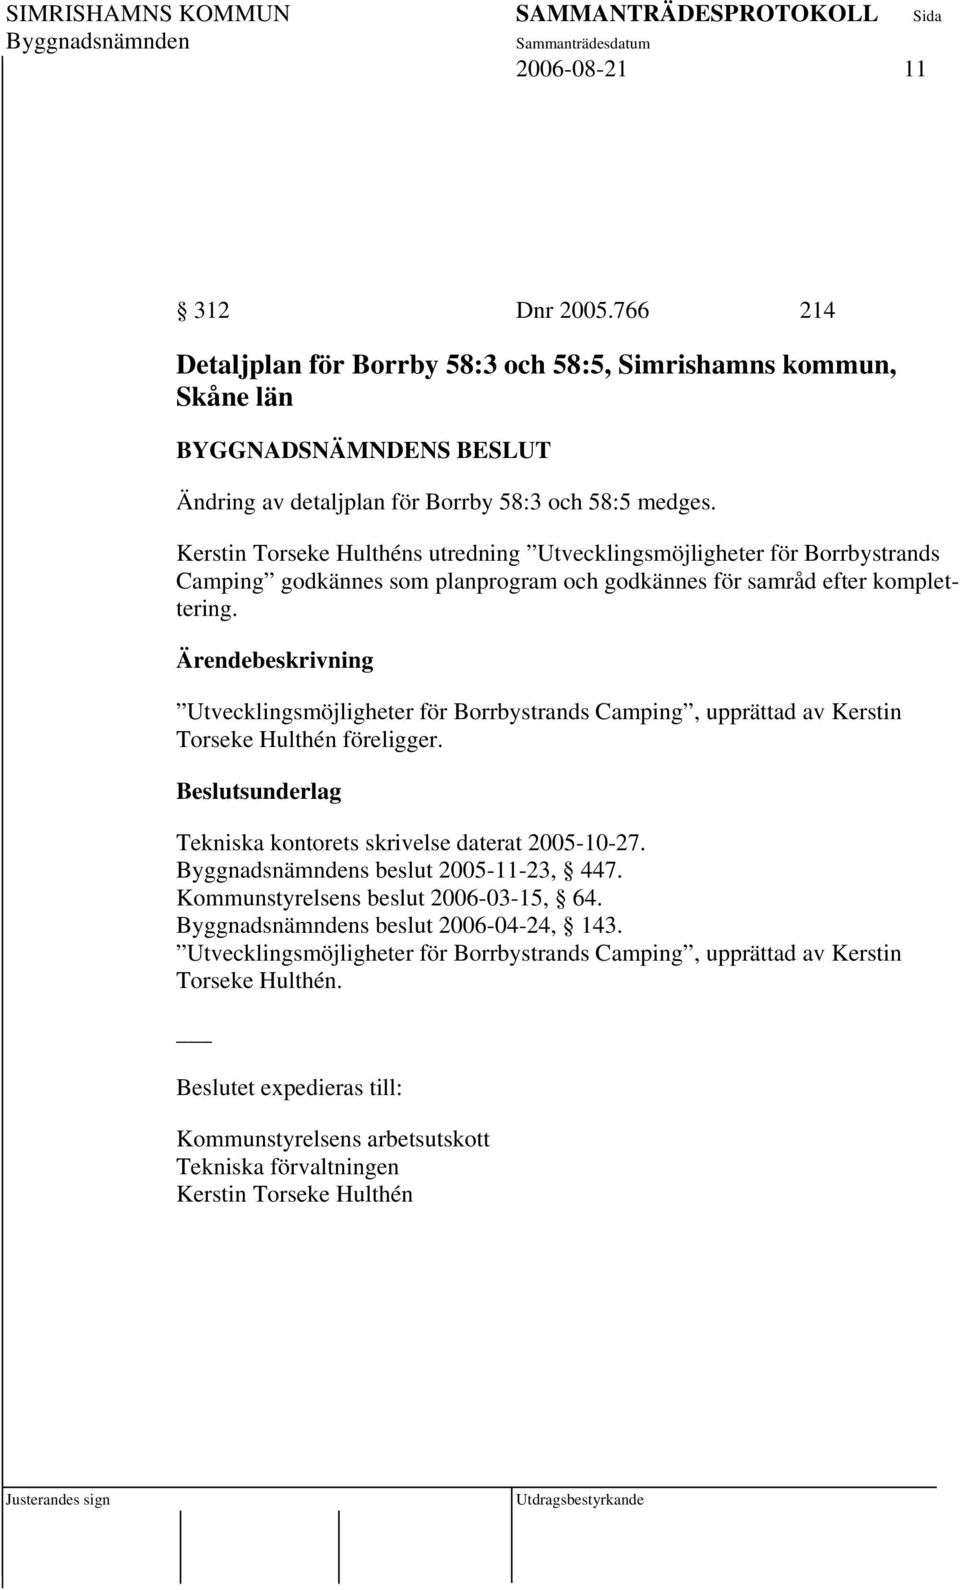 Utvecklingsmöjligheter för Borrbystrands Camping, upprättad av Kerstin Torseke Hulthén föreligger. Tekniska kontorets skrivelse daterat 2005-10-27. s beslut 2005-11-23, 447.